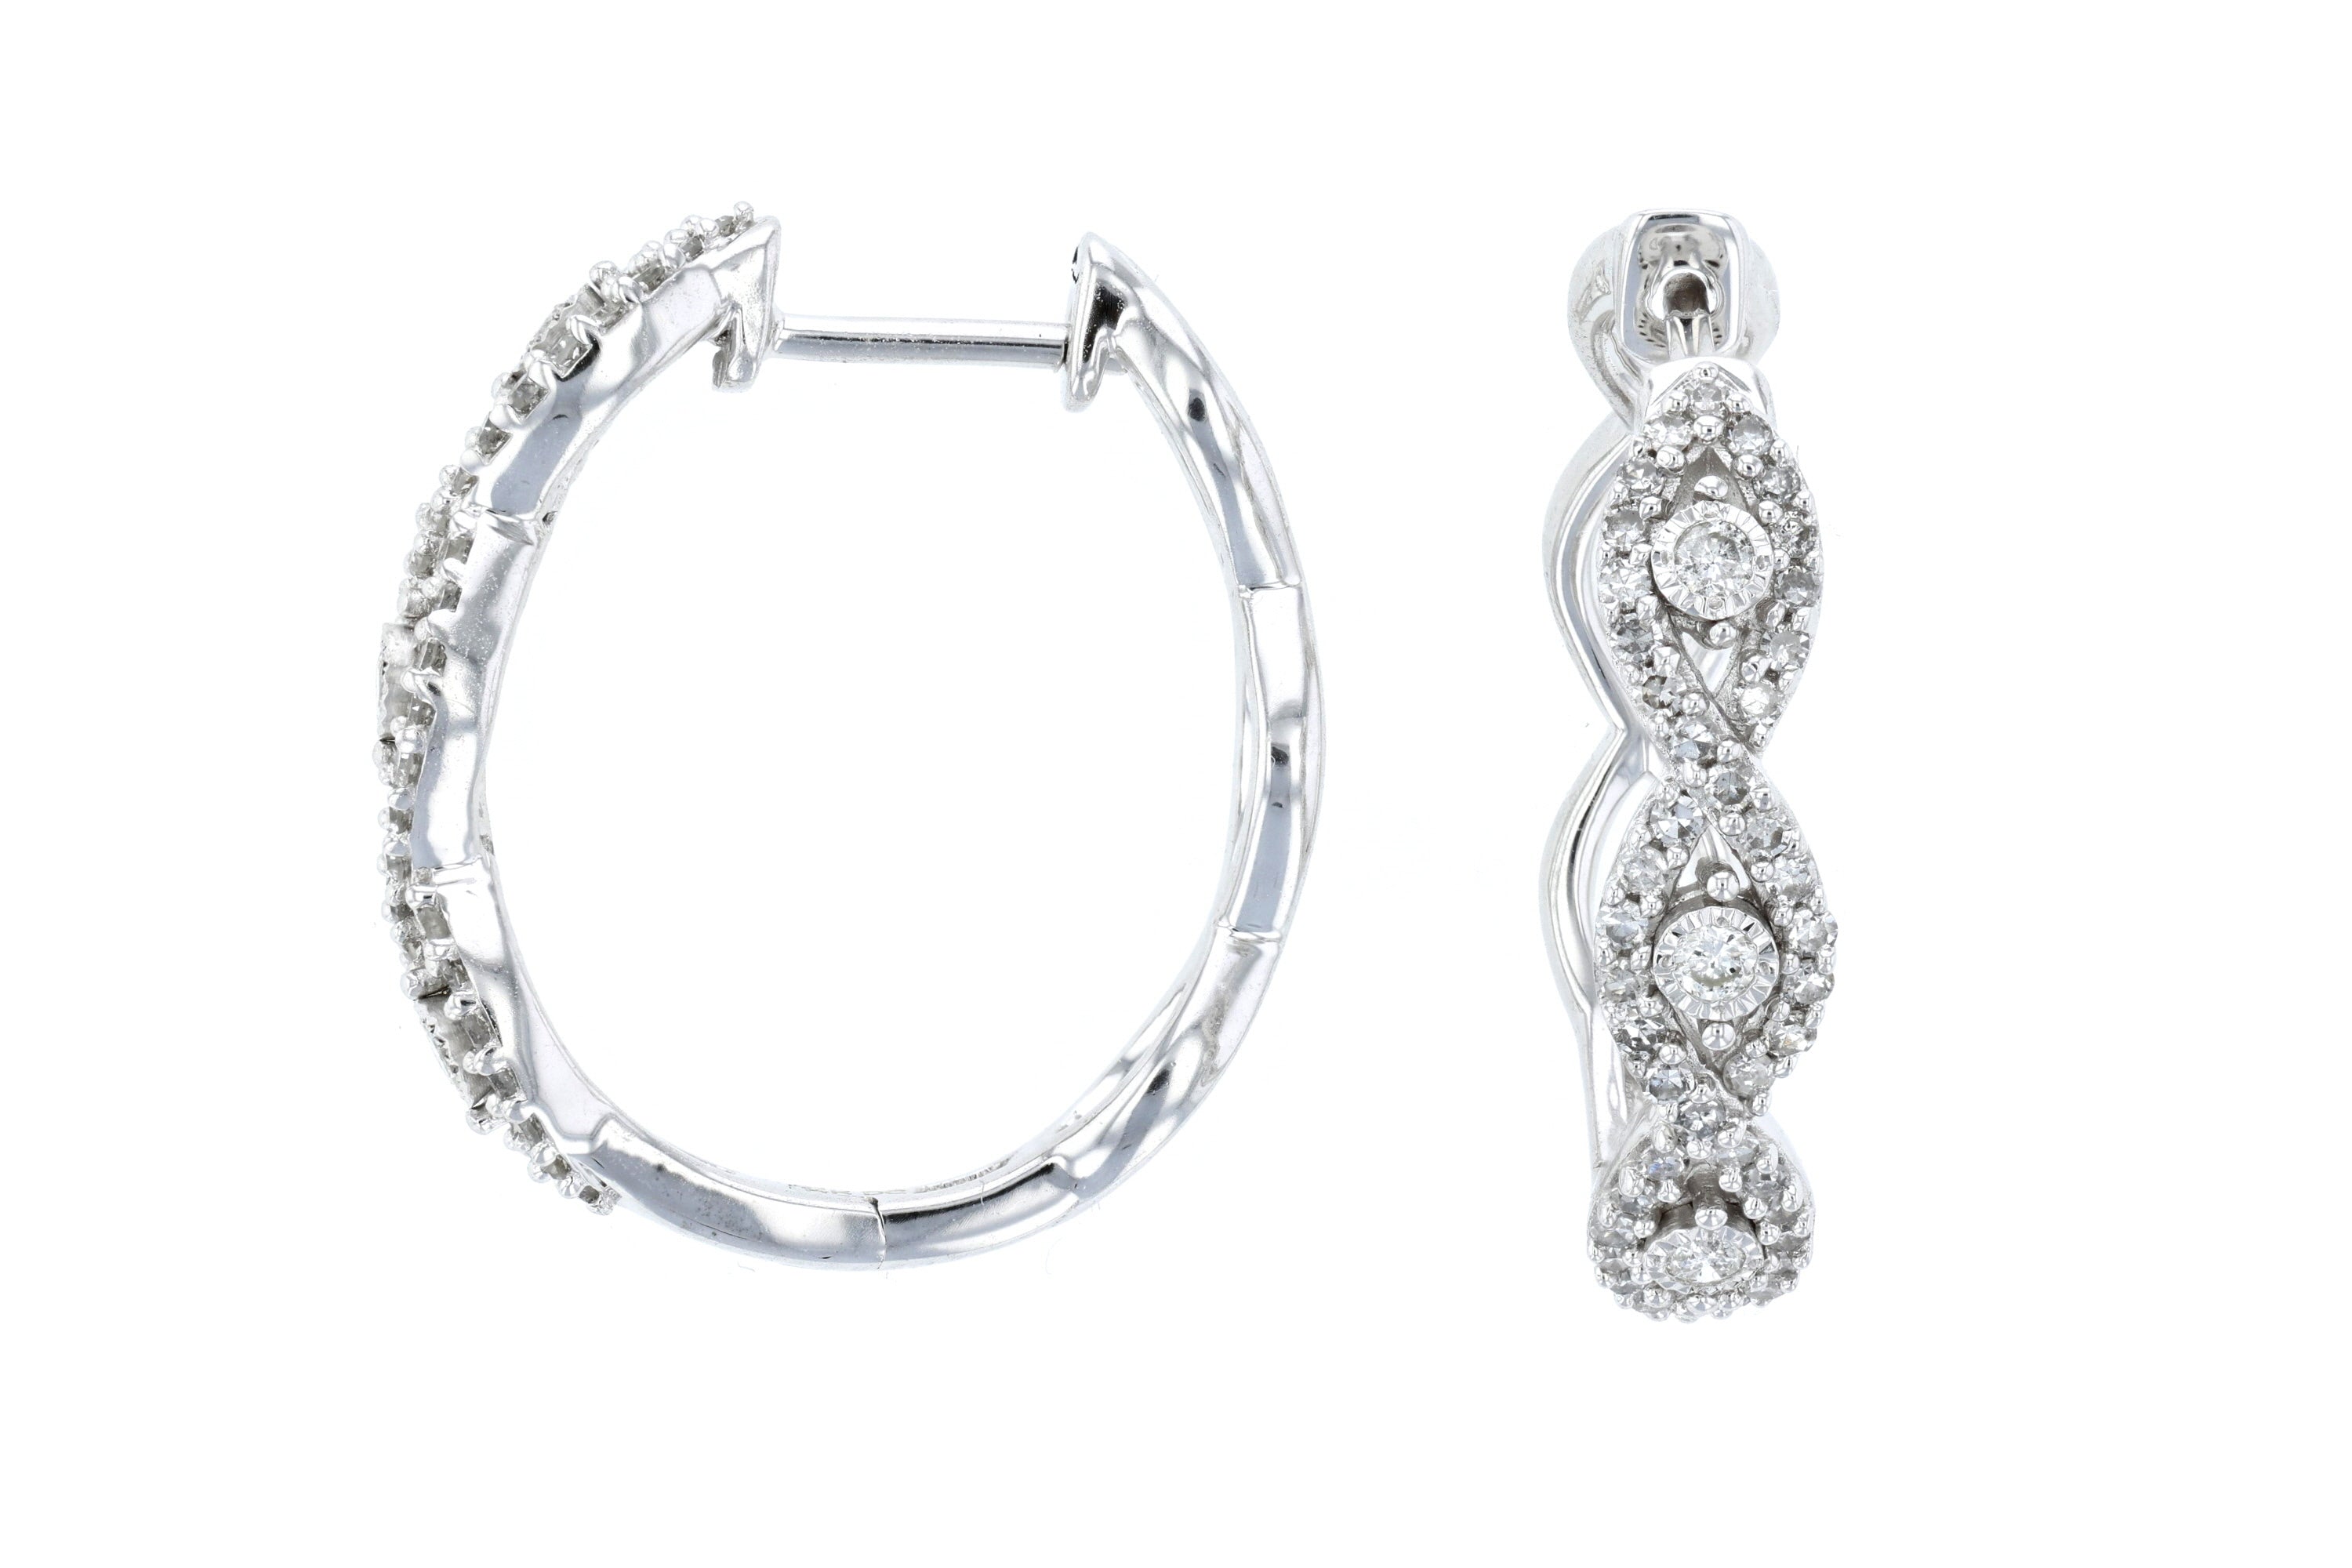 Dual Infinity Diamond Hoop Earrings in 14k White Gold